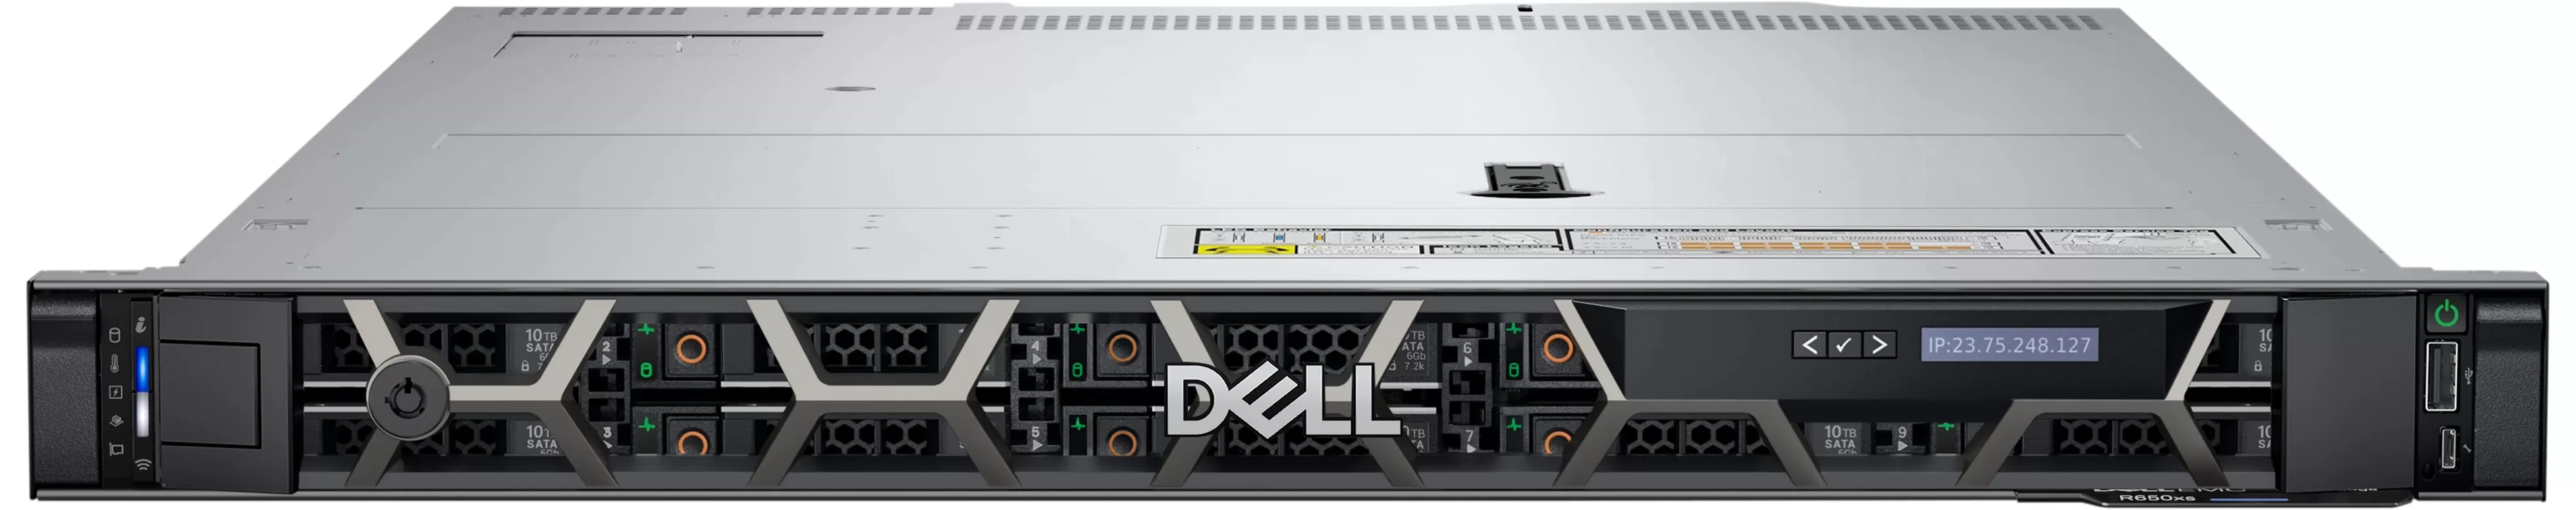 Server dell poweredge r650xs intel xeon silver 4309y 16gb ram 960gb ssd perc h755 8xsff 800w dual hotplug